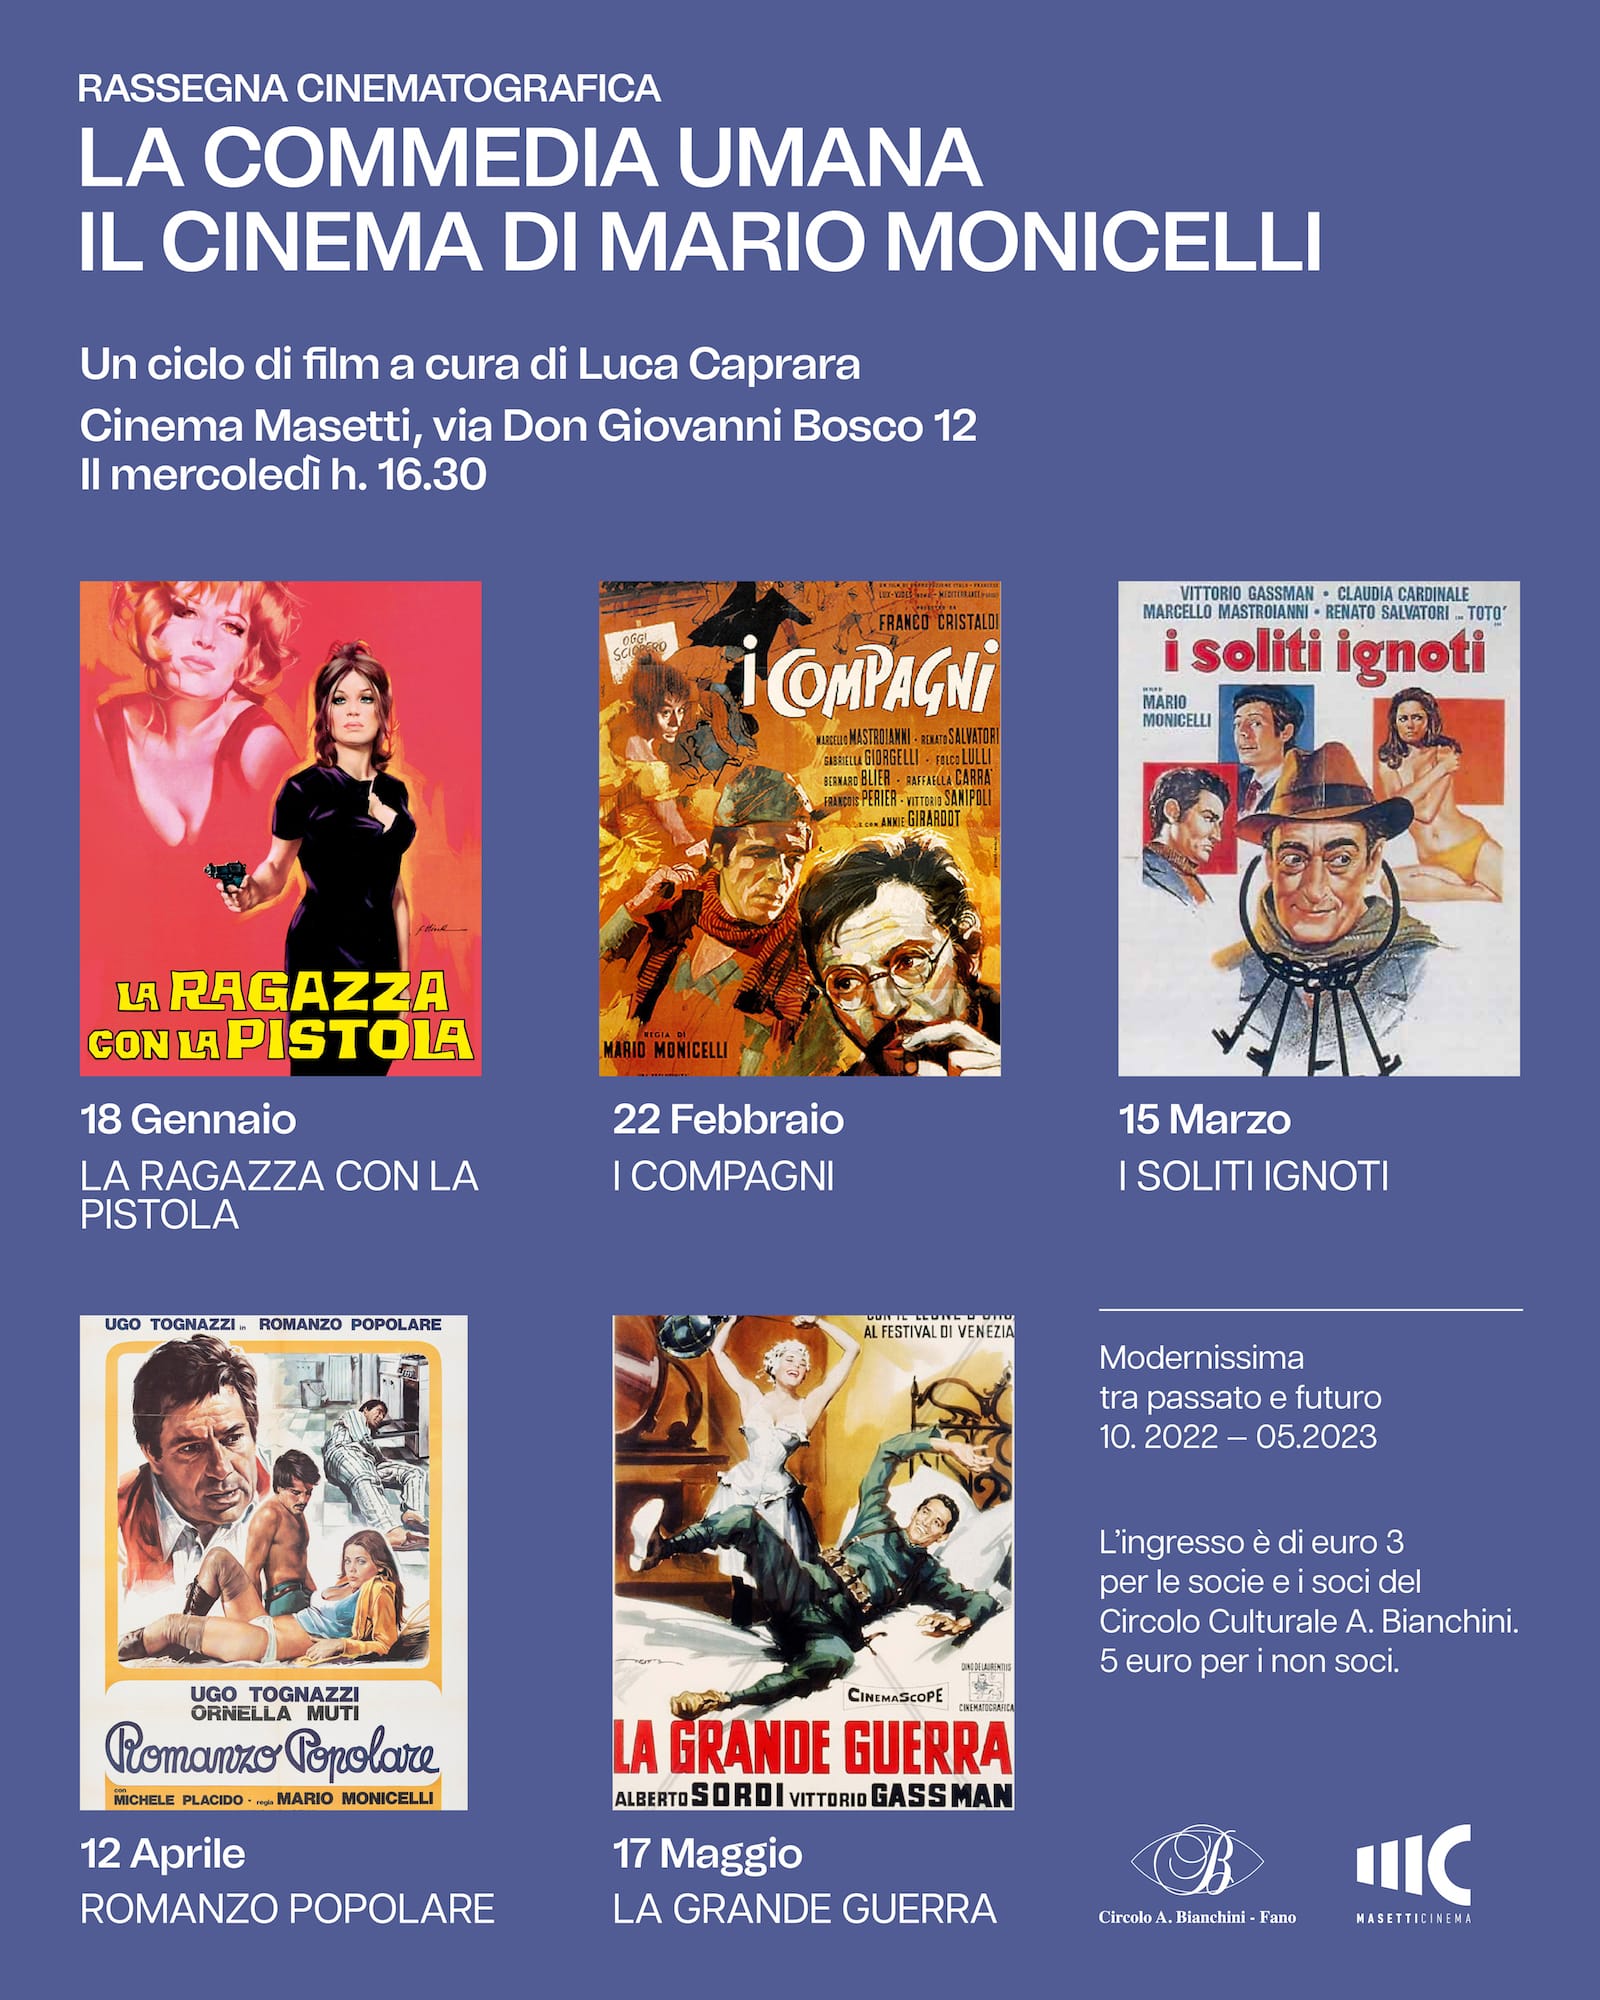 LA GRANDE GUERRA dalla Rassegna cinematografica: La commedia umana – Il cinema di Mario Monicelli